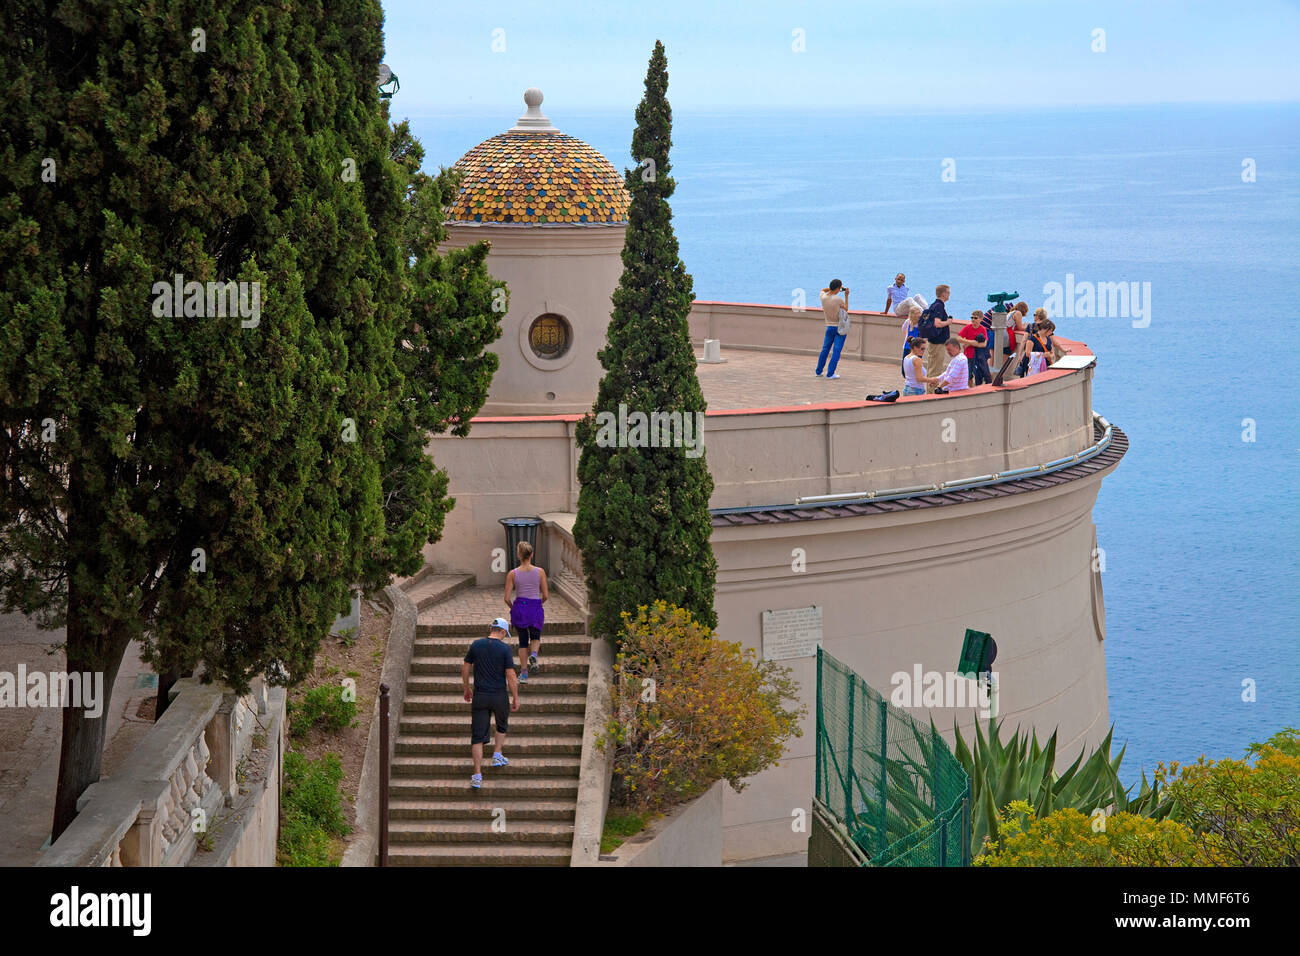 La Tour Bellanda, Aussichtsterrasse mit Blick auf die Stadt und den Strand von Nizza, Côte d'Azur, Alpes Maritimes, Südfrankreich, Frankreich, Europa Stockfoto